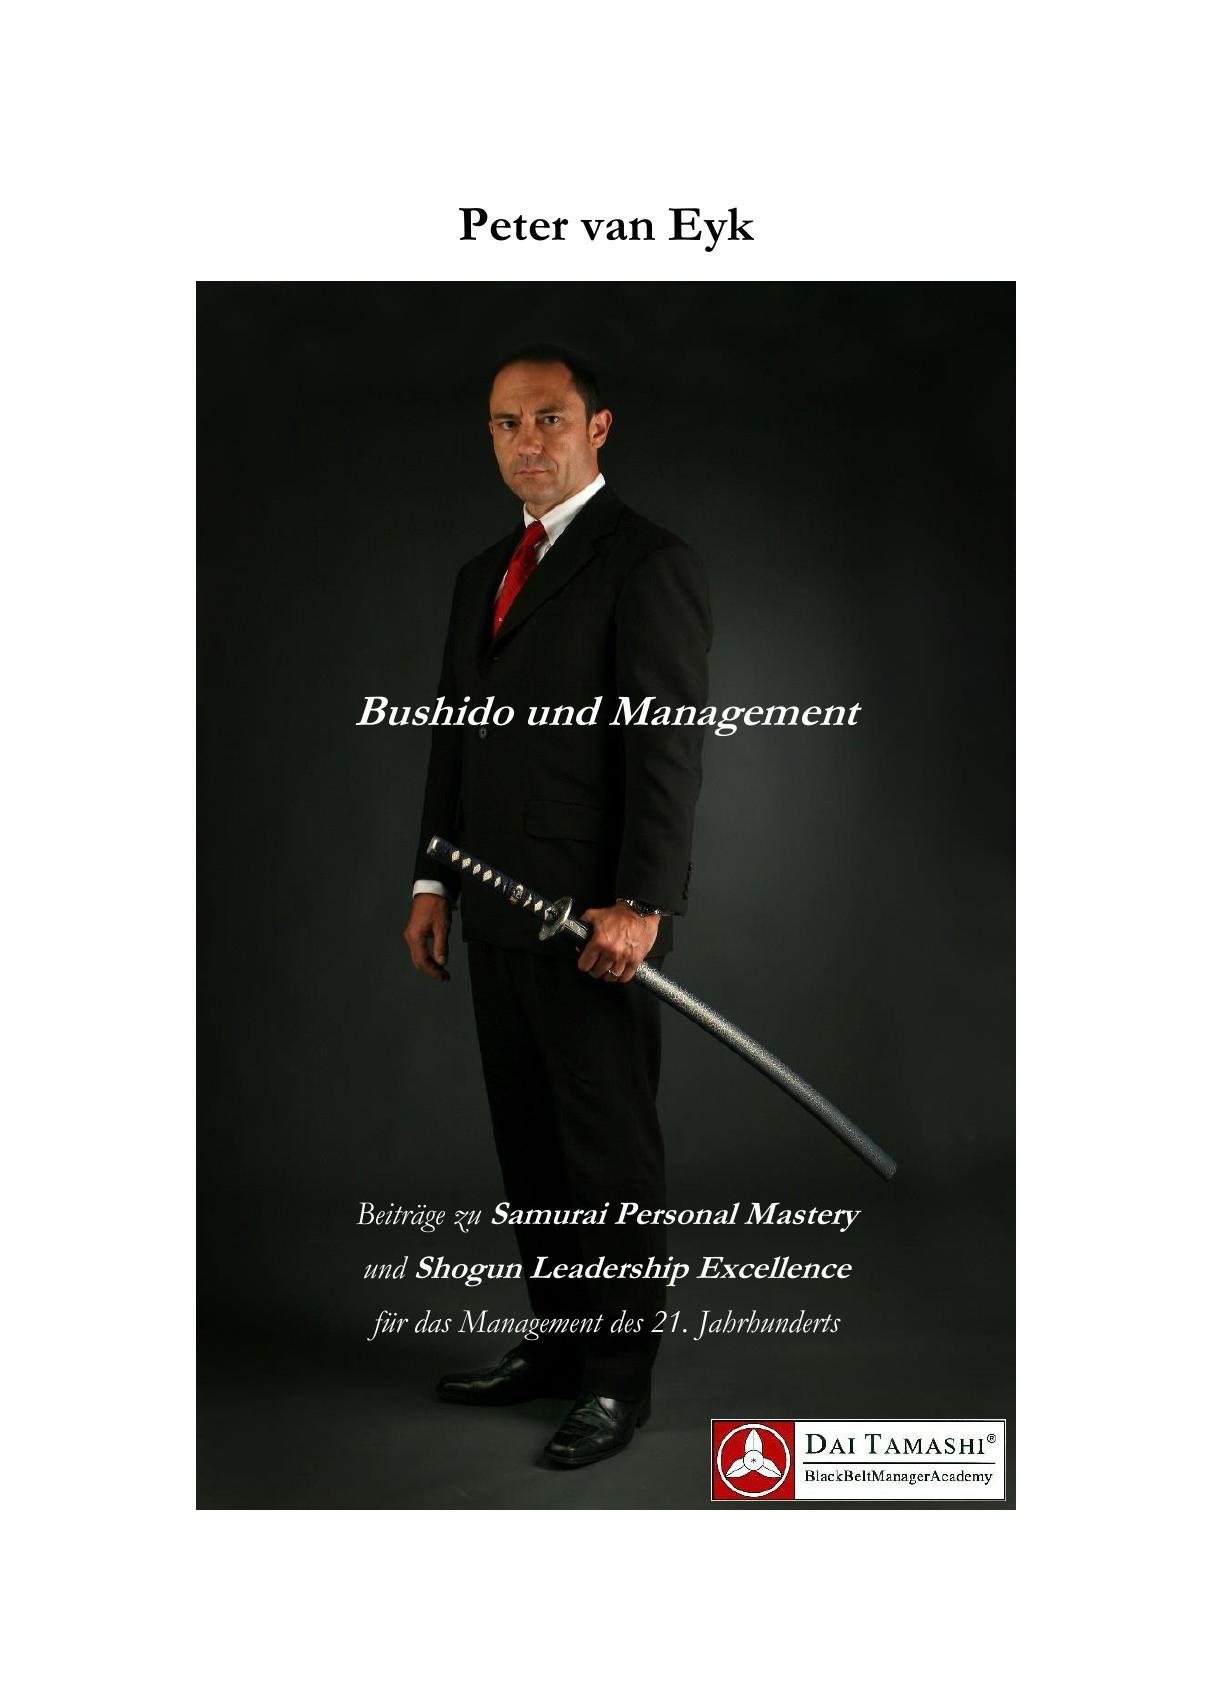 Bushido und Management: Leadership Coaching mit über 150 Weisheiten (van Eyk, Peter)